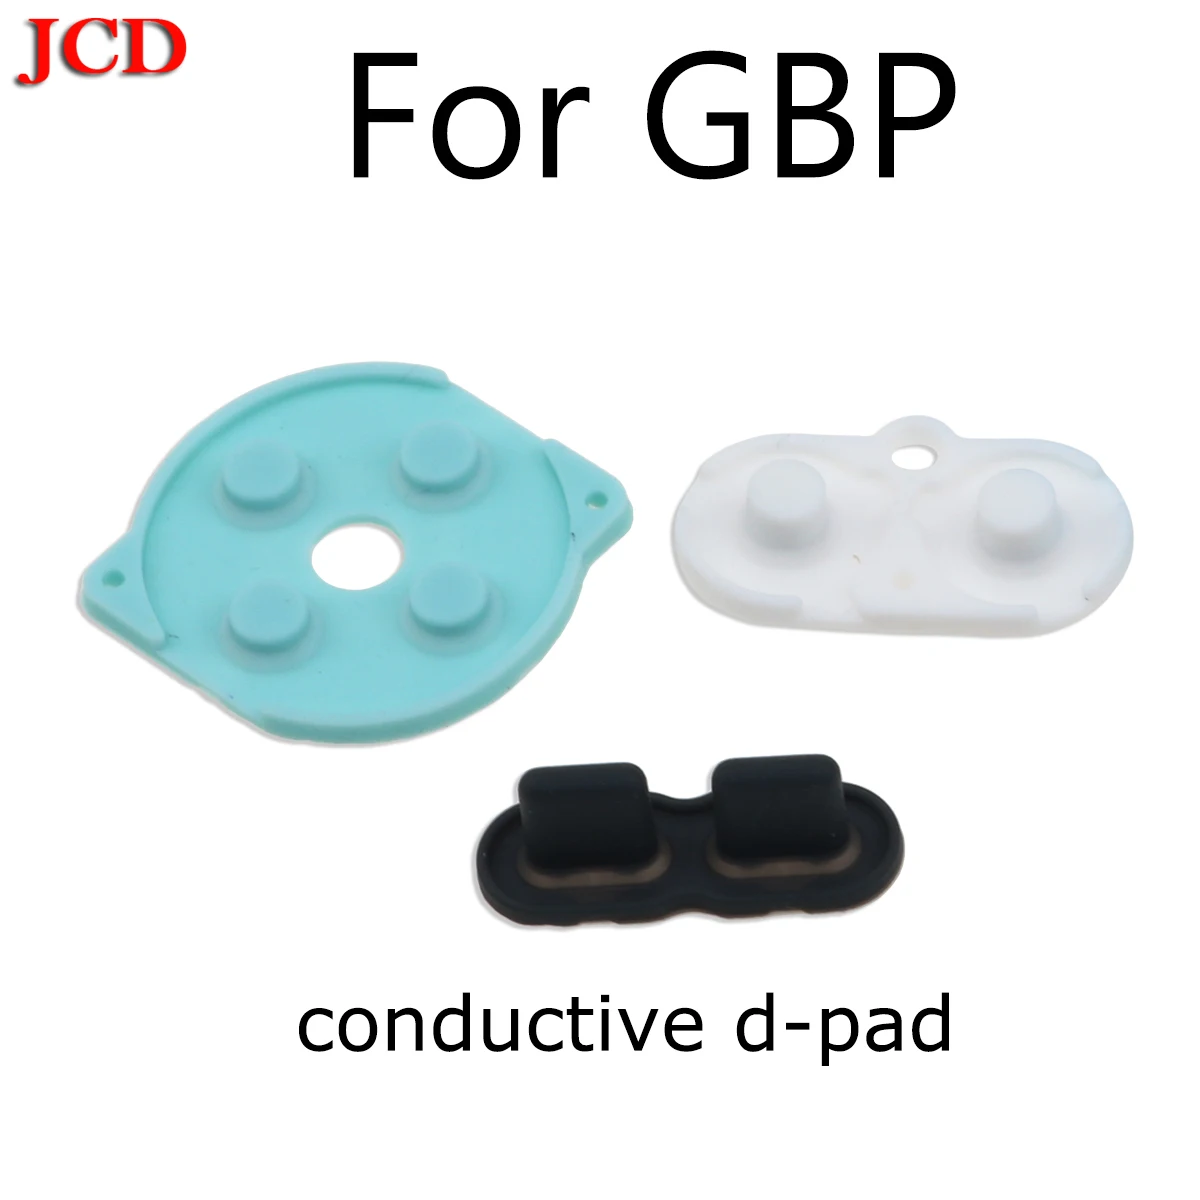 JCD 28 комплектов разноцветная A B кнопки клавиатуры для карманная приставка Game Boy для GBP Выключатель кнопки для GBP D колодки Мощность кнопки - Цвет: conductive d-pad